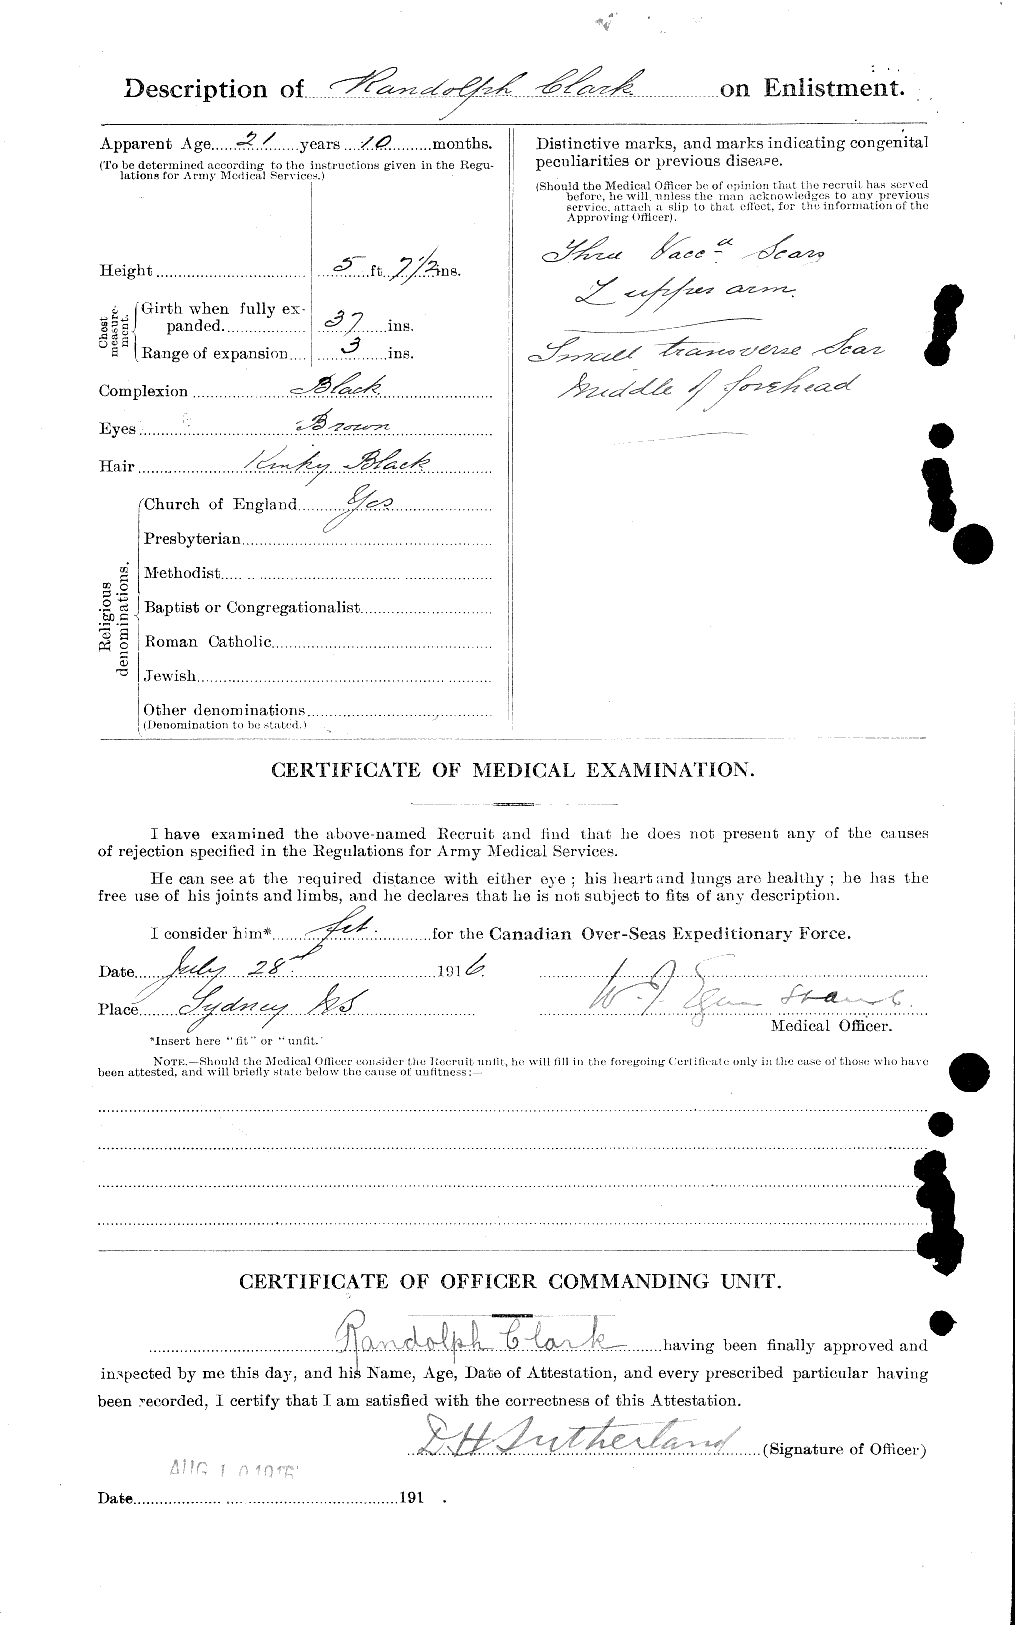 Dossiers du Personnel de la Première Guerre mondiale - CEC 023497b